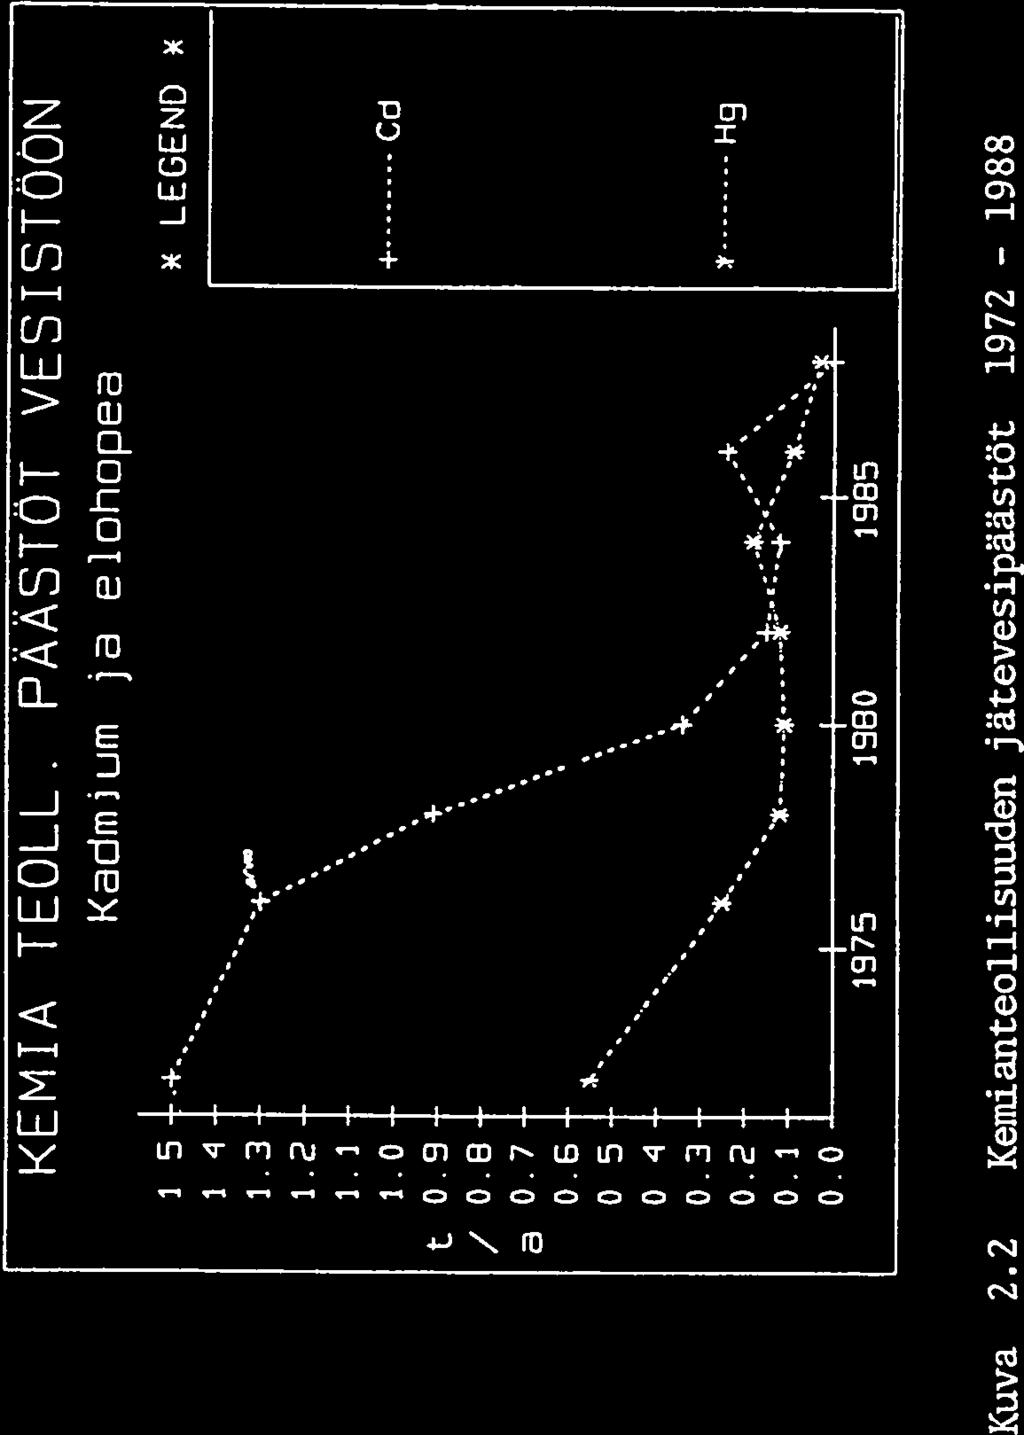 2 KemianteolUsuuden jätevesipäästöt 1972-1988 KEMIANTEOLLO PÄÄSTÖT VESISTÖÖN (Kemira Oy,